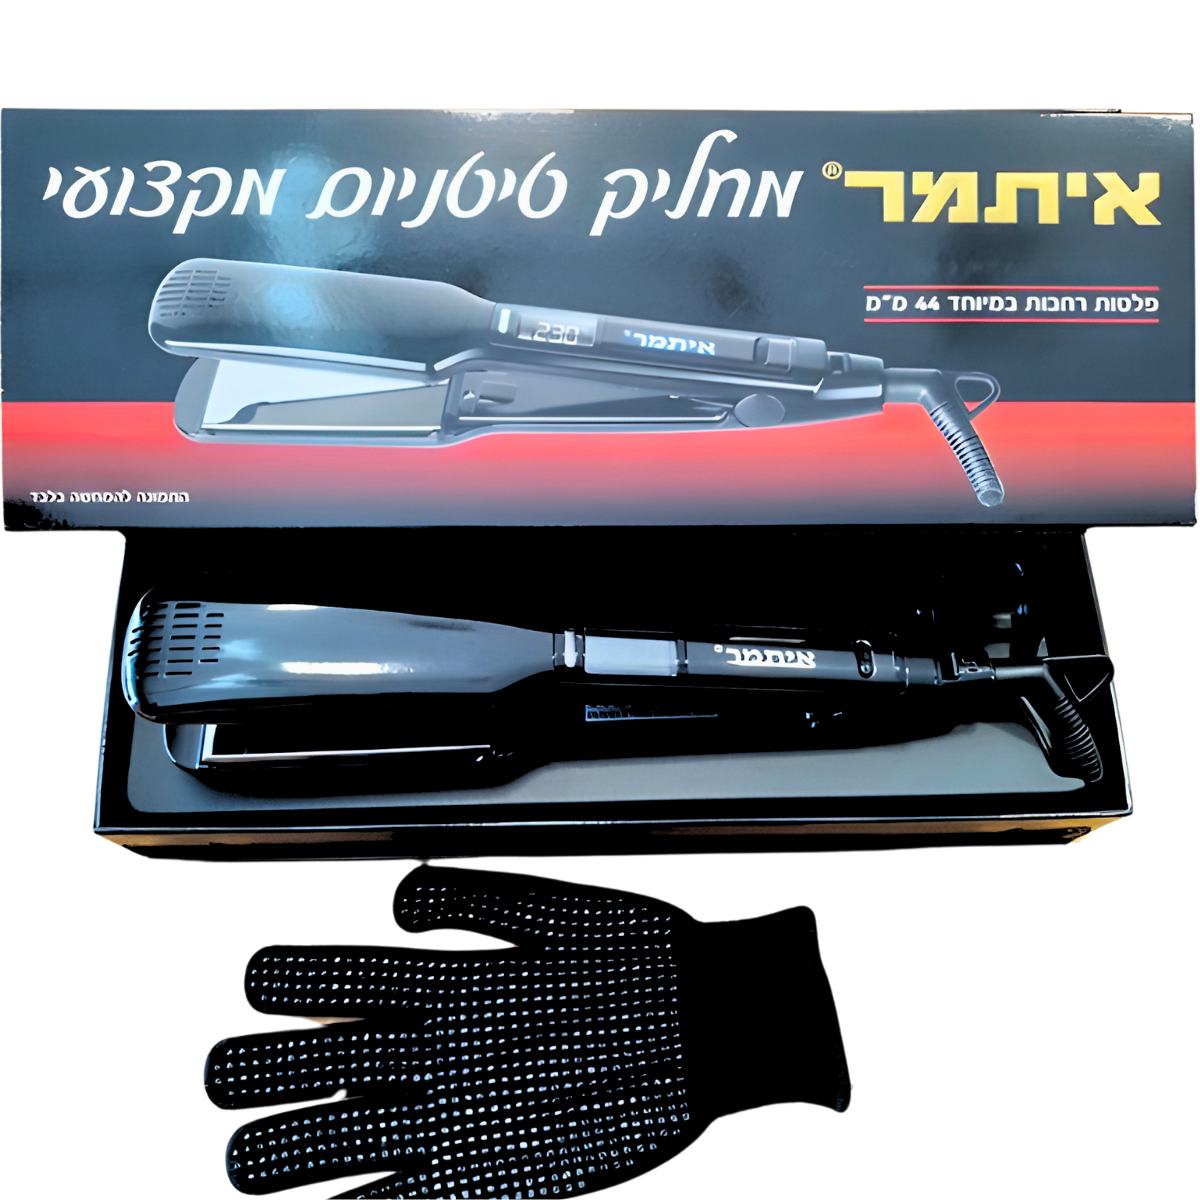 מחליק טיטניום מקצועי ITAMAR ITA 760 בנרתיק יוקרתי + כפפה עמידה בחום + מסכה מתנה איתמר